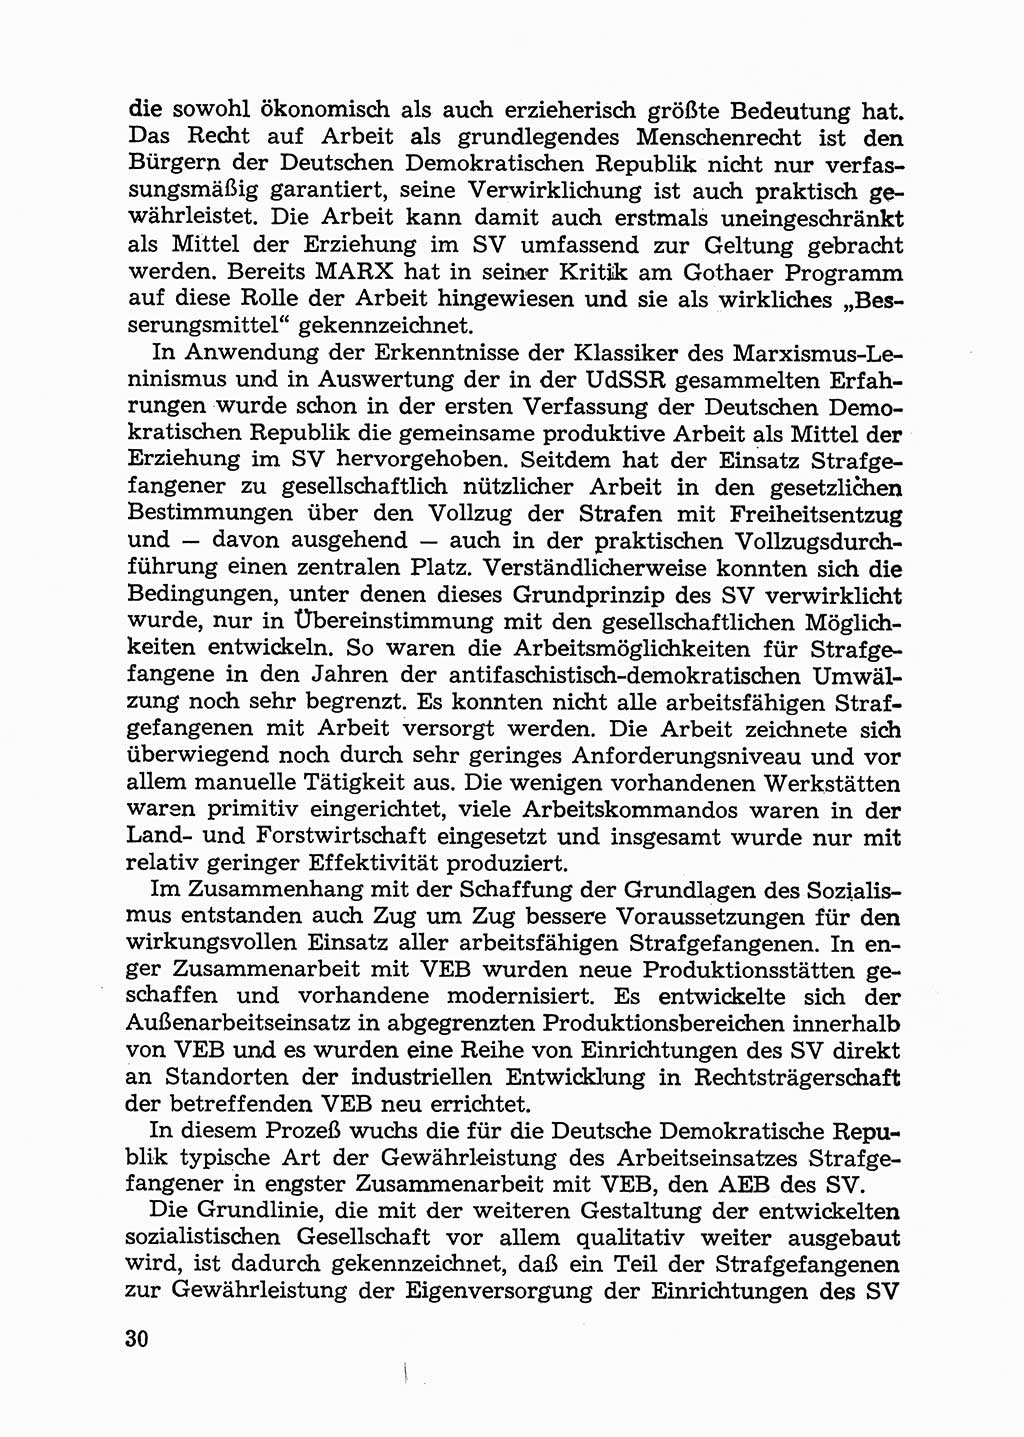 Handbuch für Betriebsangehörige, Abteilung Strafvollzug (SV) [Ministerium des Innern (MdI) Deutsche Demokratische Republik (DDR)] 1981, Seite 30 (Hb. BA Abt. SV MdI DDR 1981, S. 30)